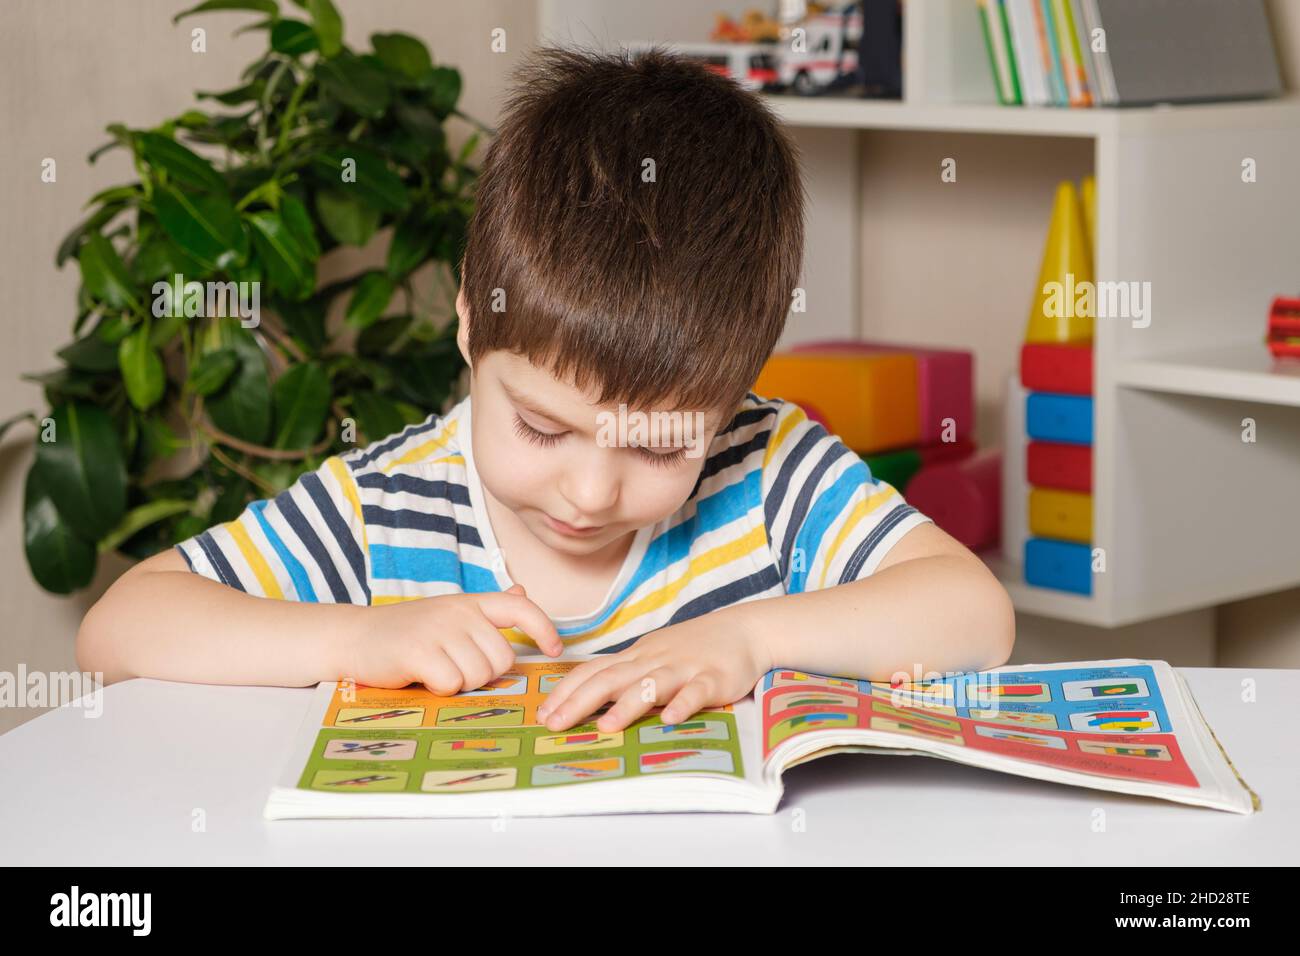 Ein 4-jähriges Kind sitzt an einem Tisch und liest ein Buch, schaut sich Bilder an, lernt lesen. Stockfoto